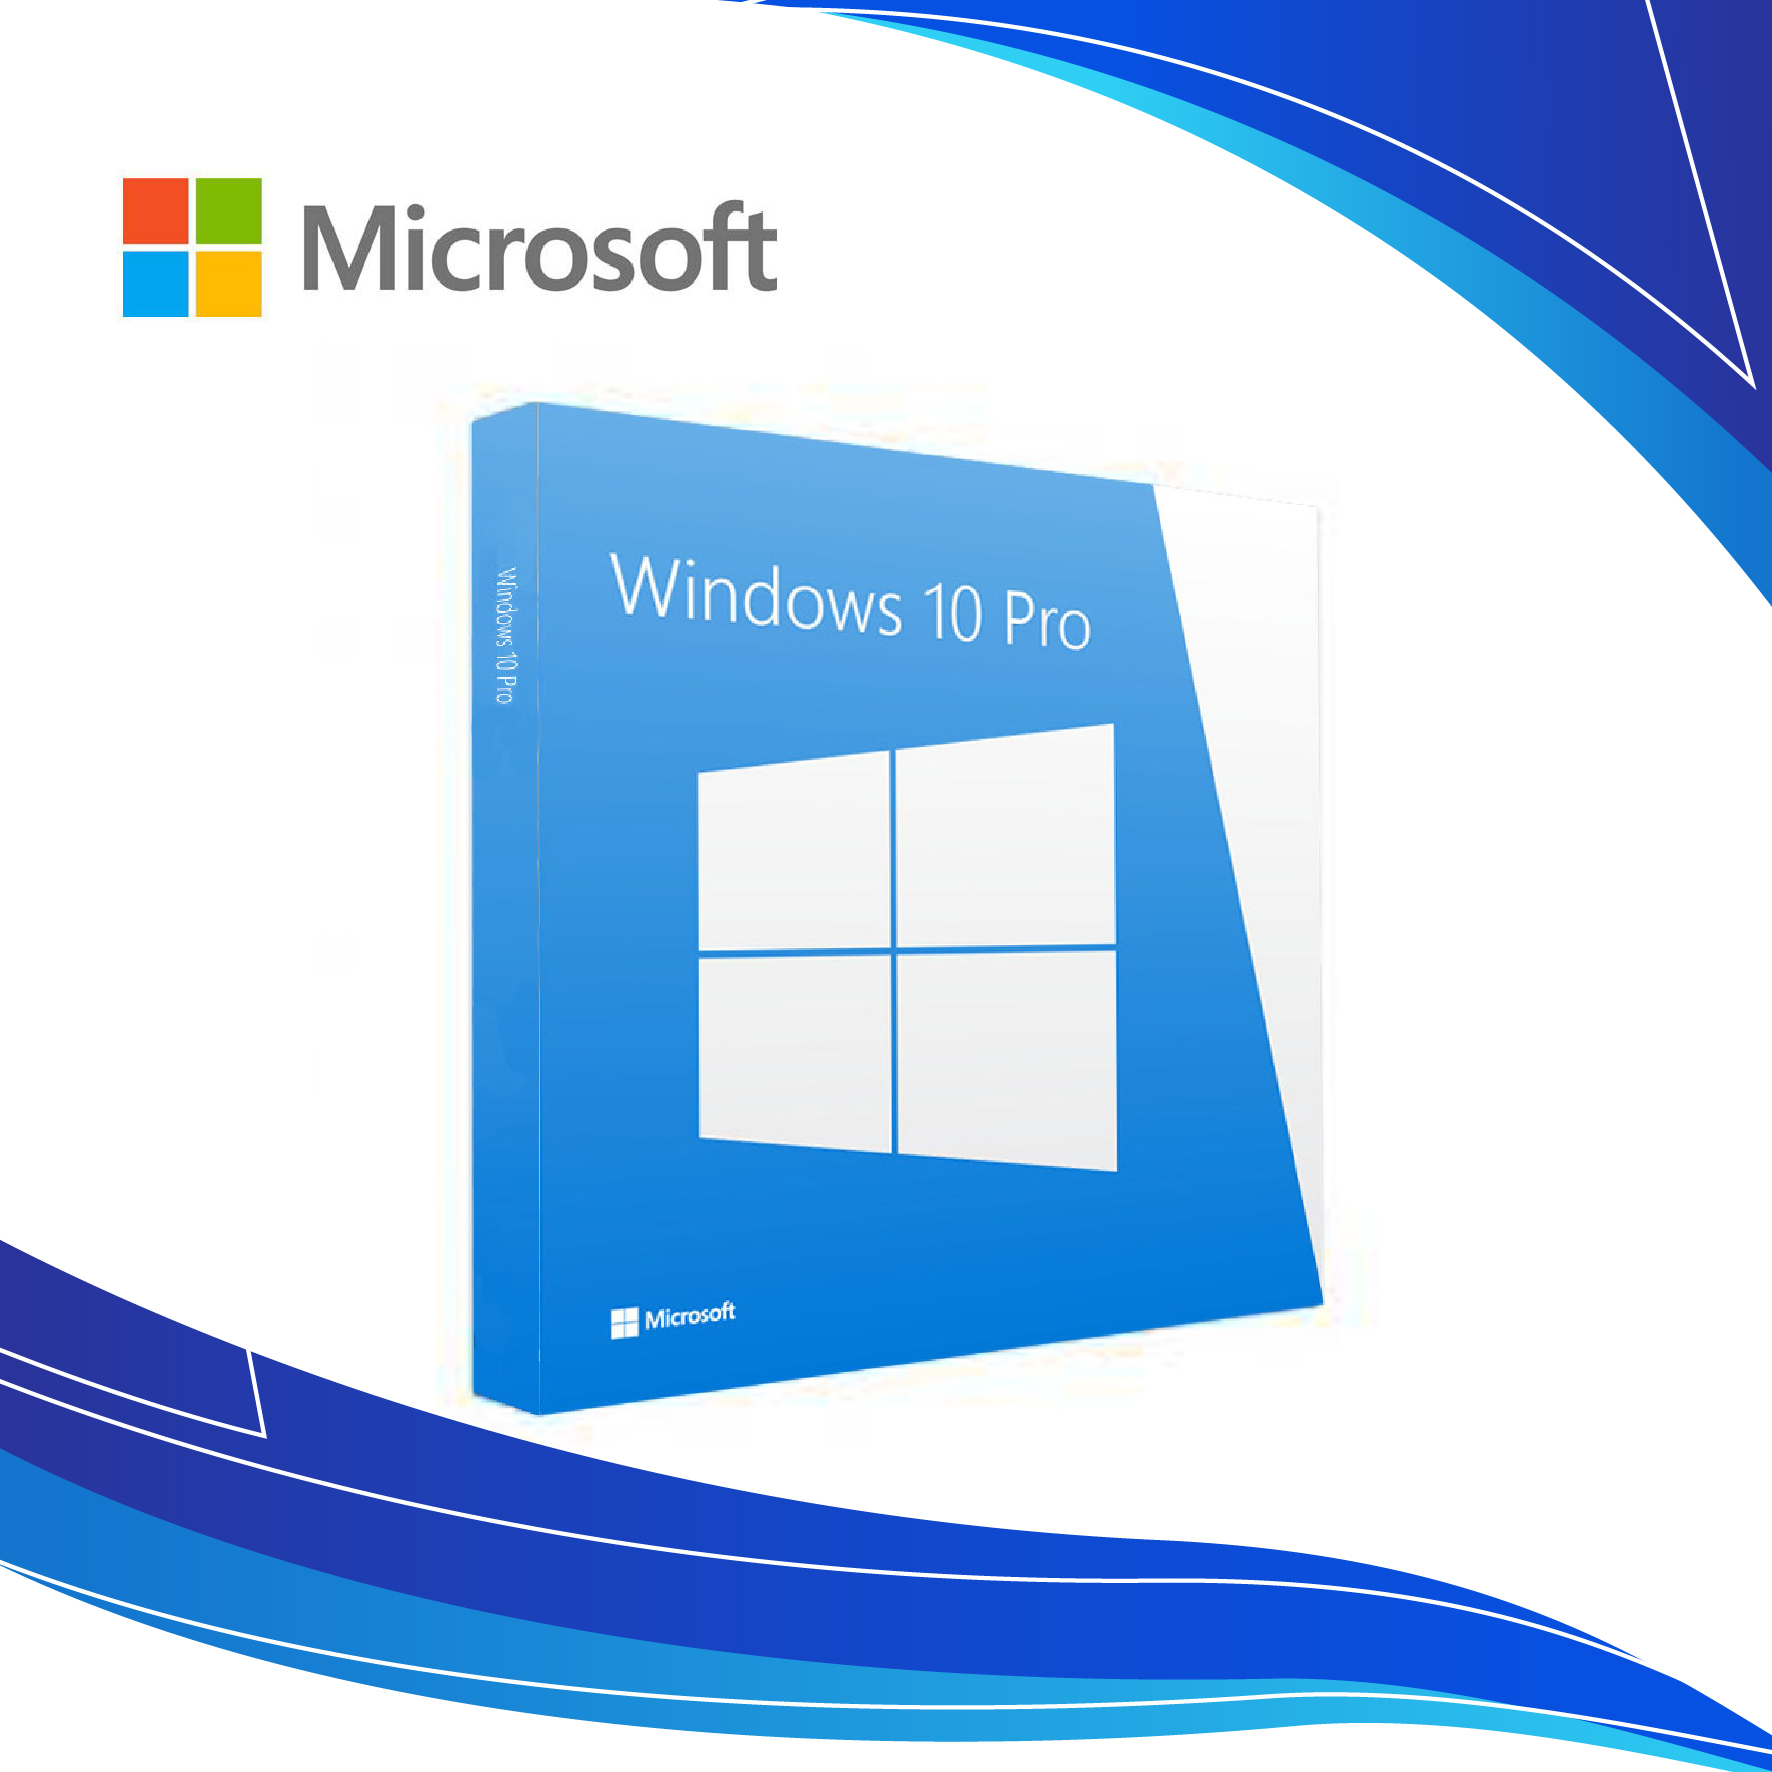 Consigue tu Licencia de Windows 10 Pro y Optimiza tu Experiencia